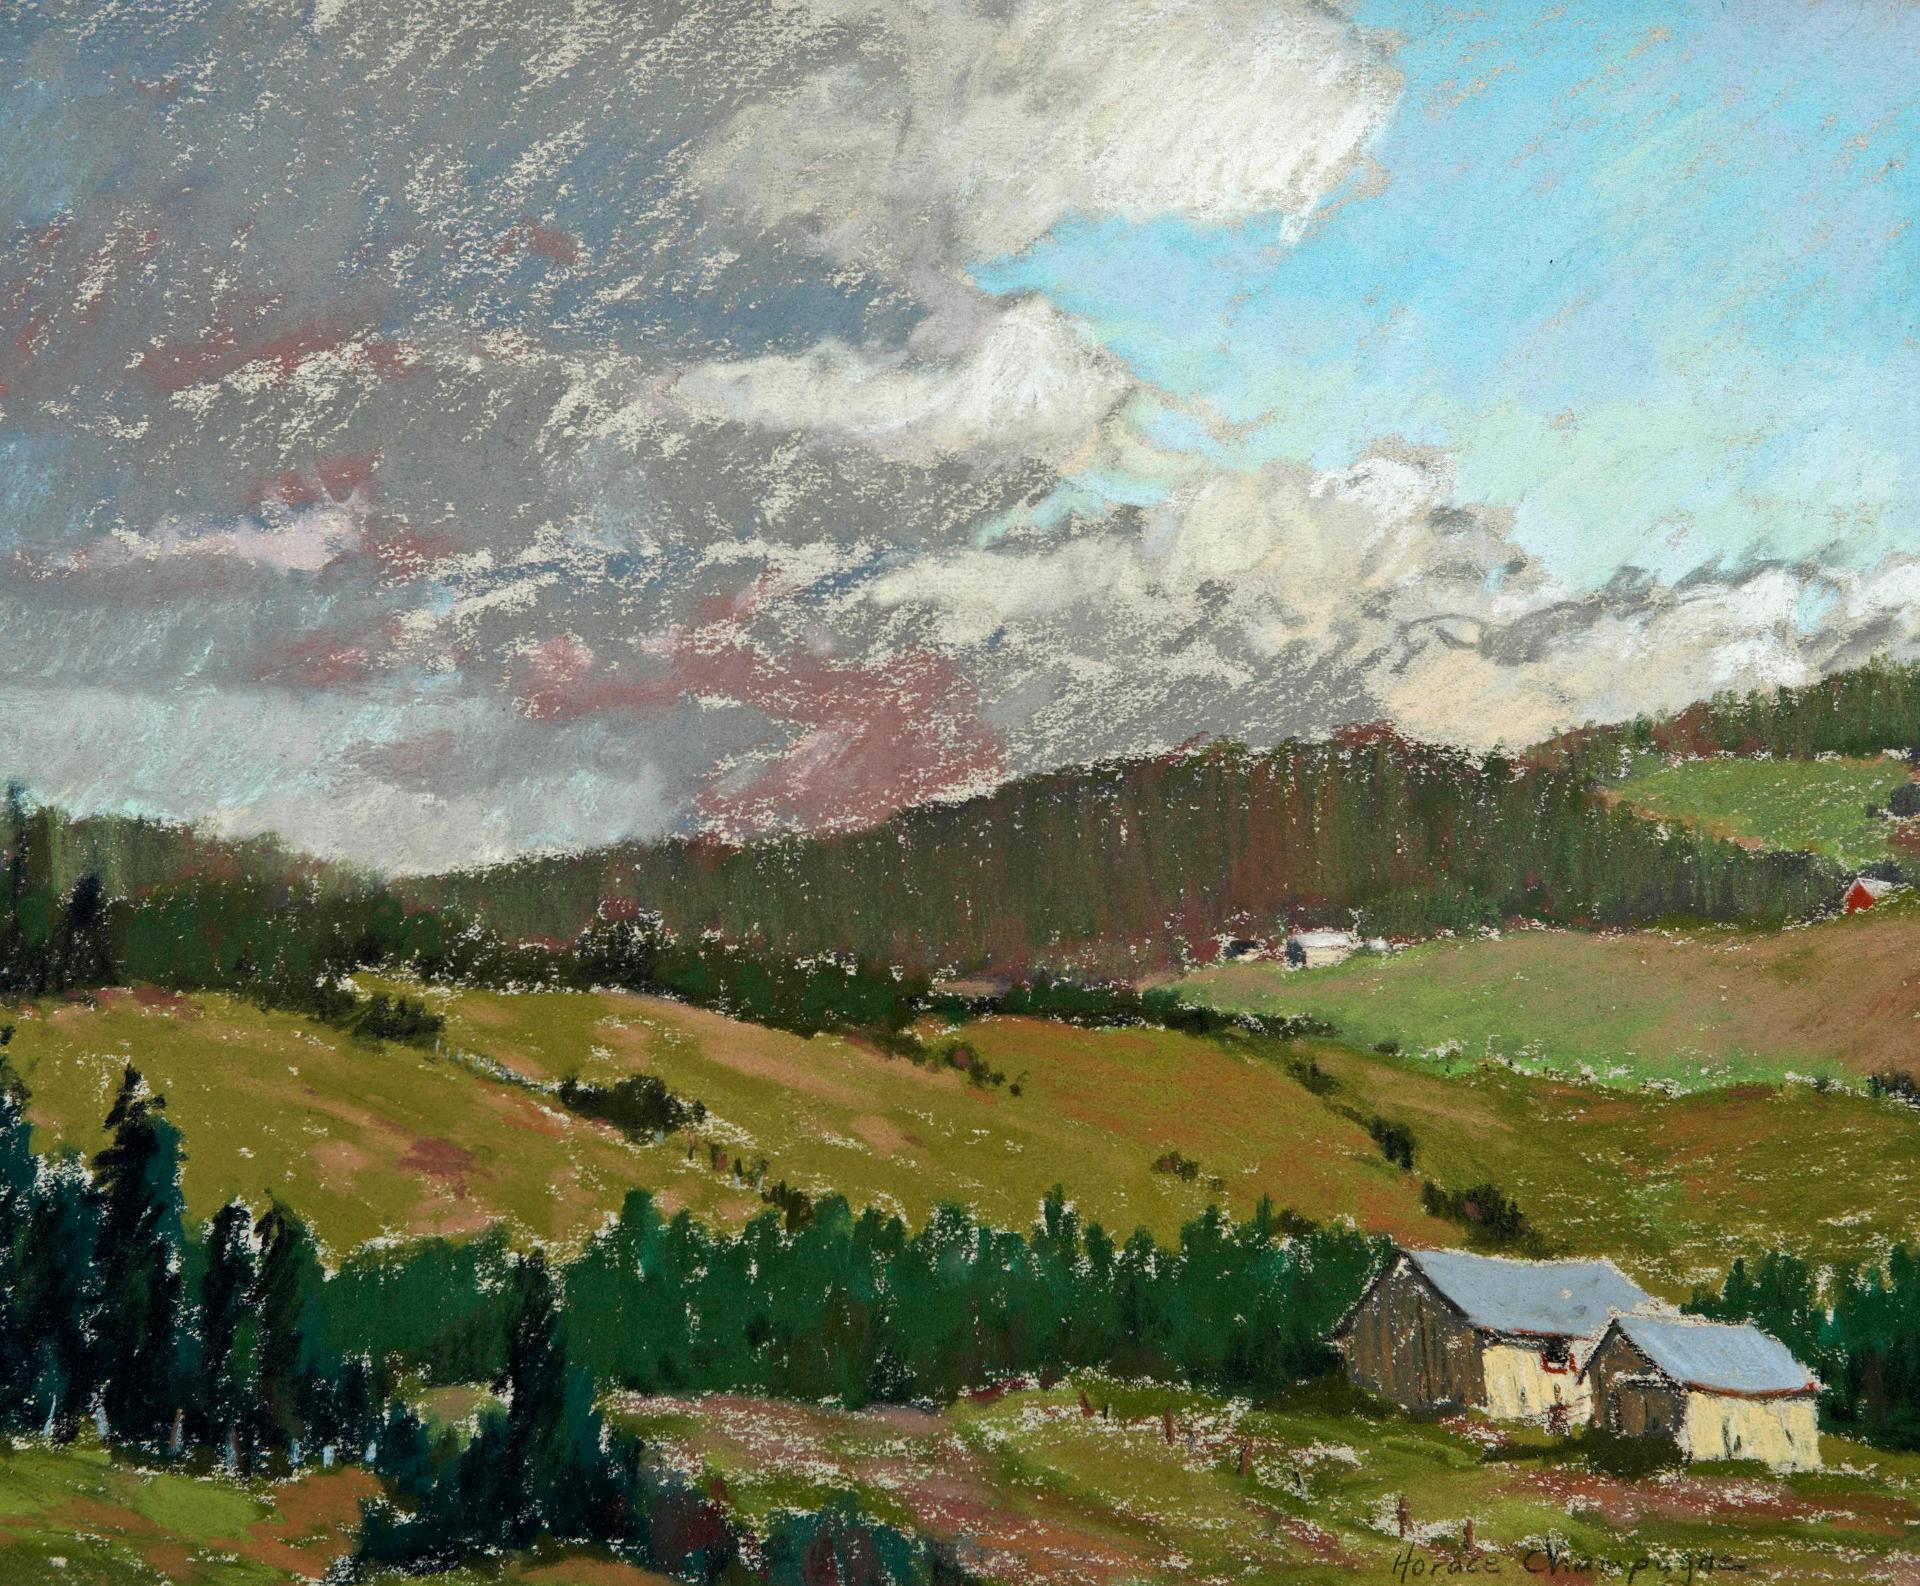 Horace Champagne (1937) - Towering Clouds, Cap à L'aigle, Québec